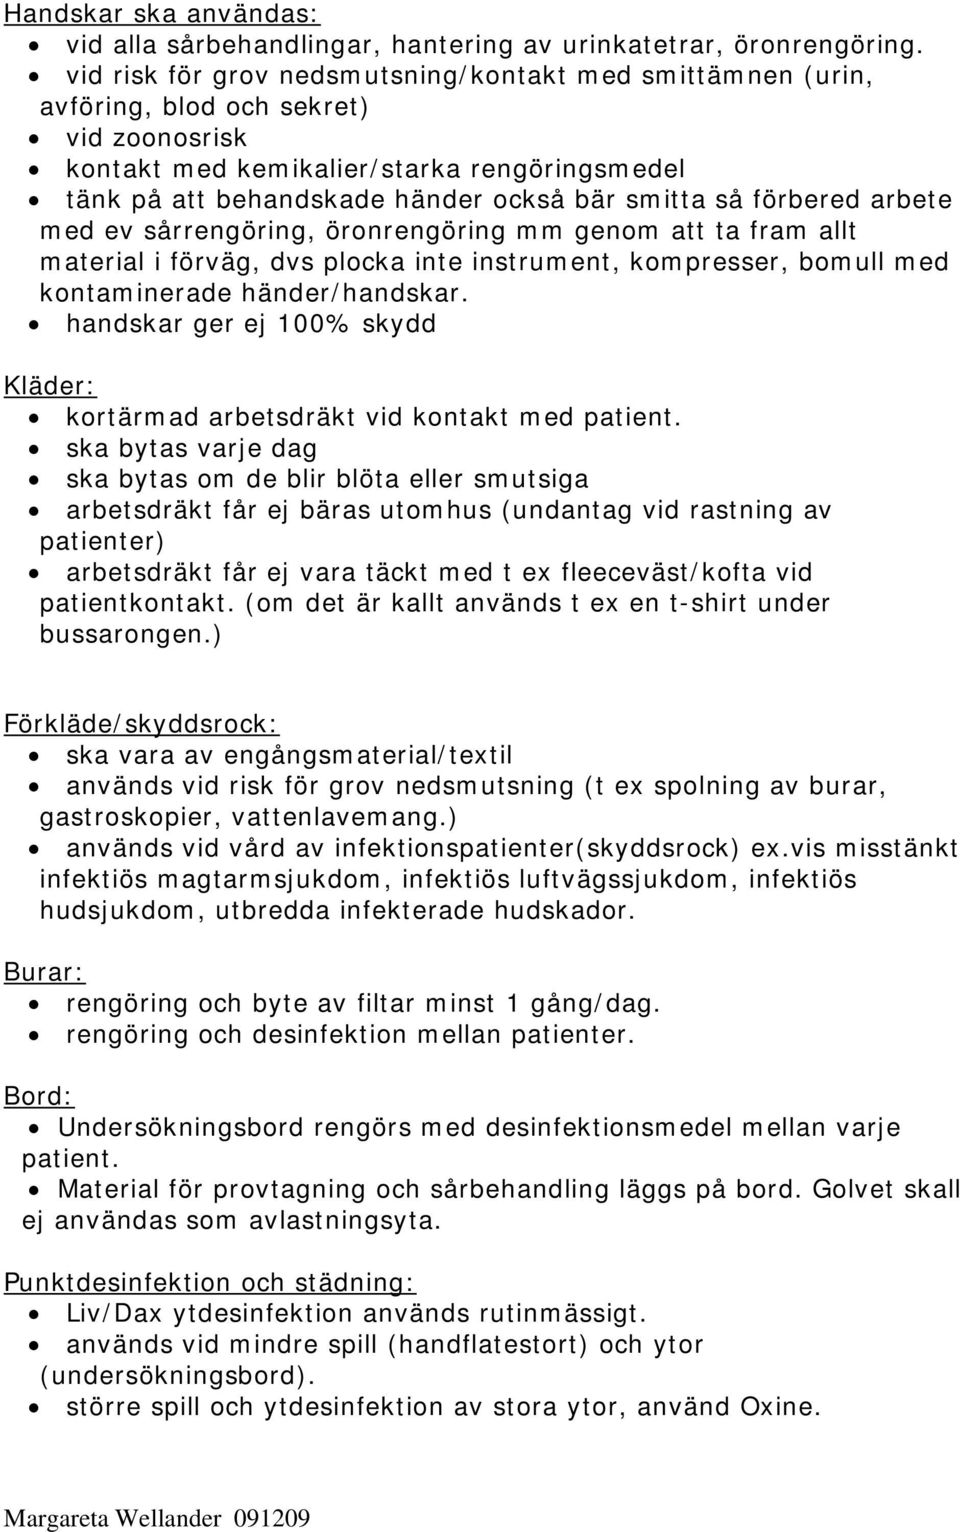 Hygienpolicy för personal vid Stockholms Regiondjursjukhus ...